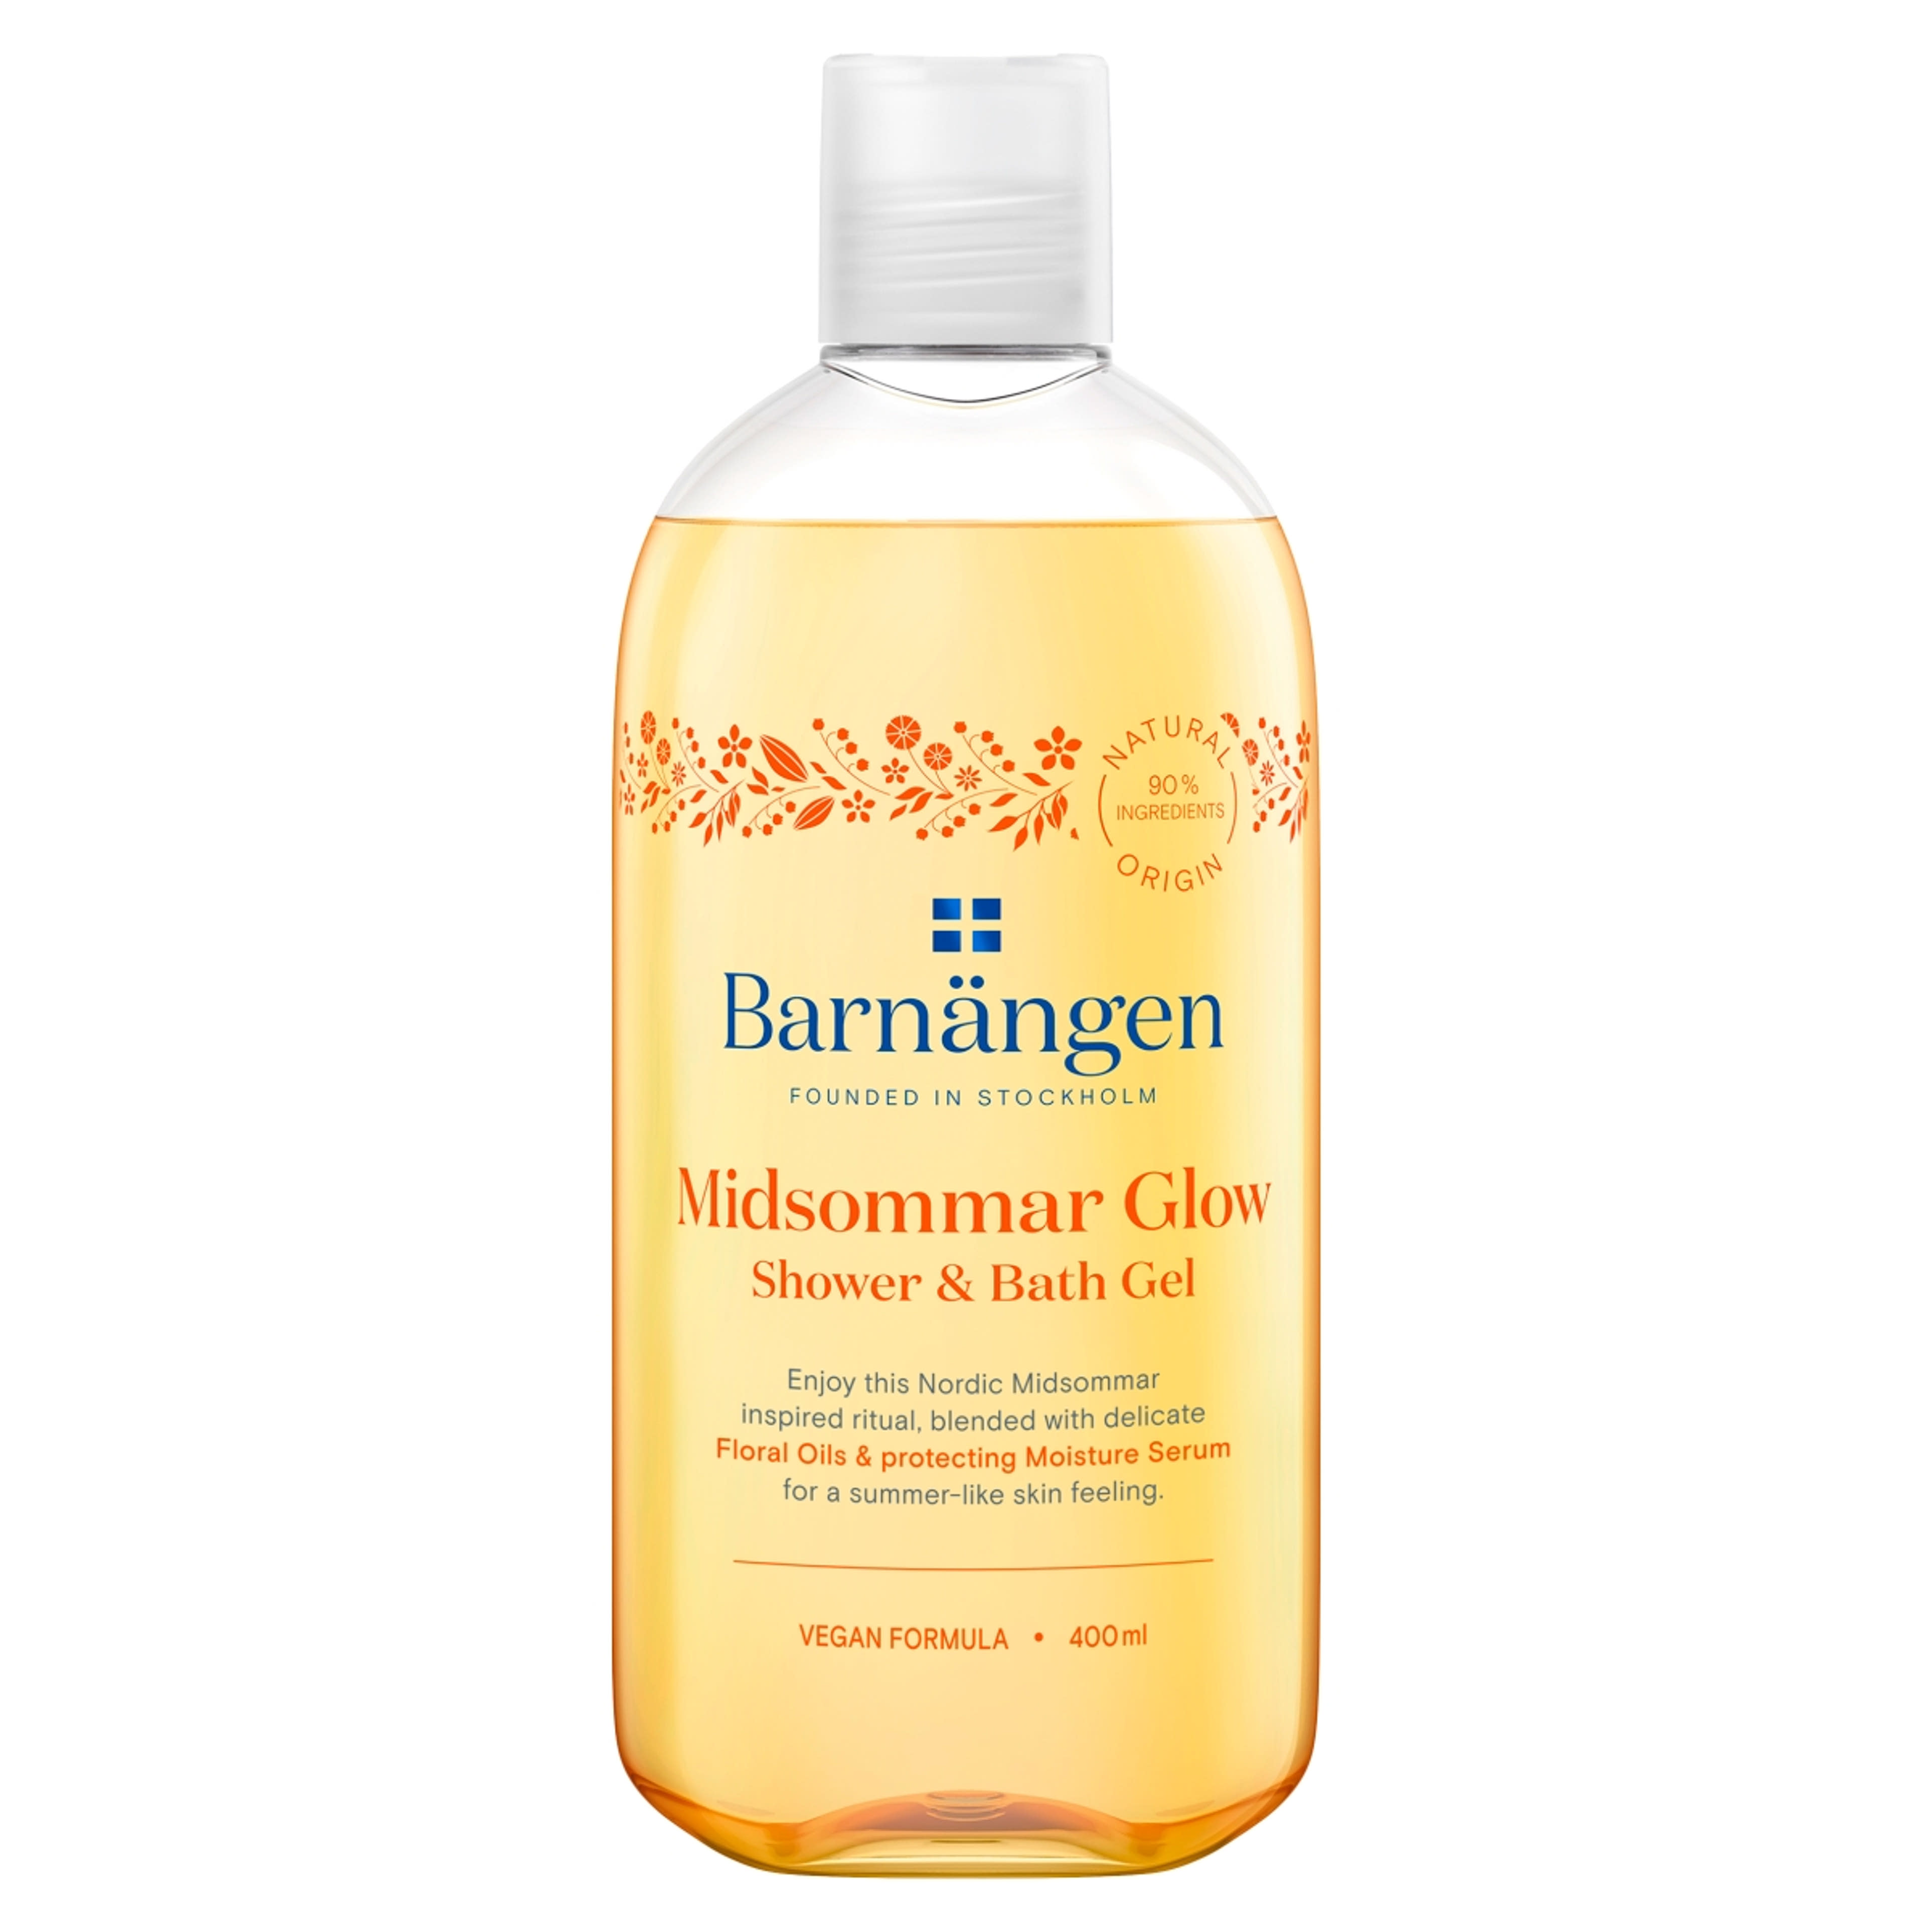 Barnangen Midsommar Glow tus- és habfürdő - 400 ml-1